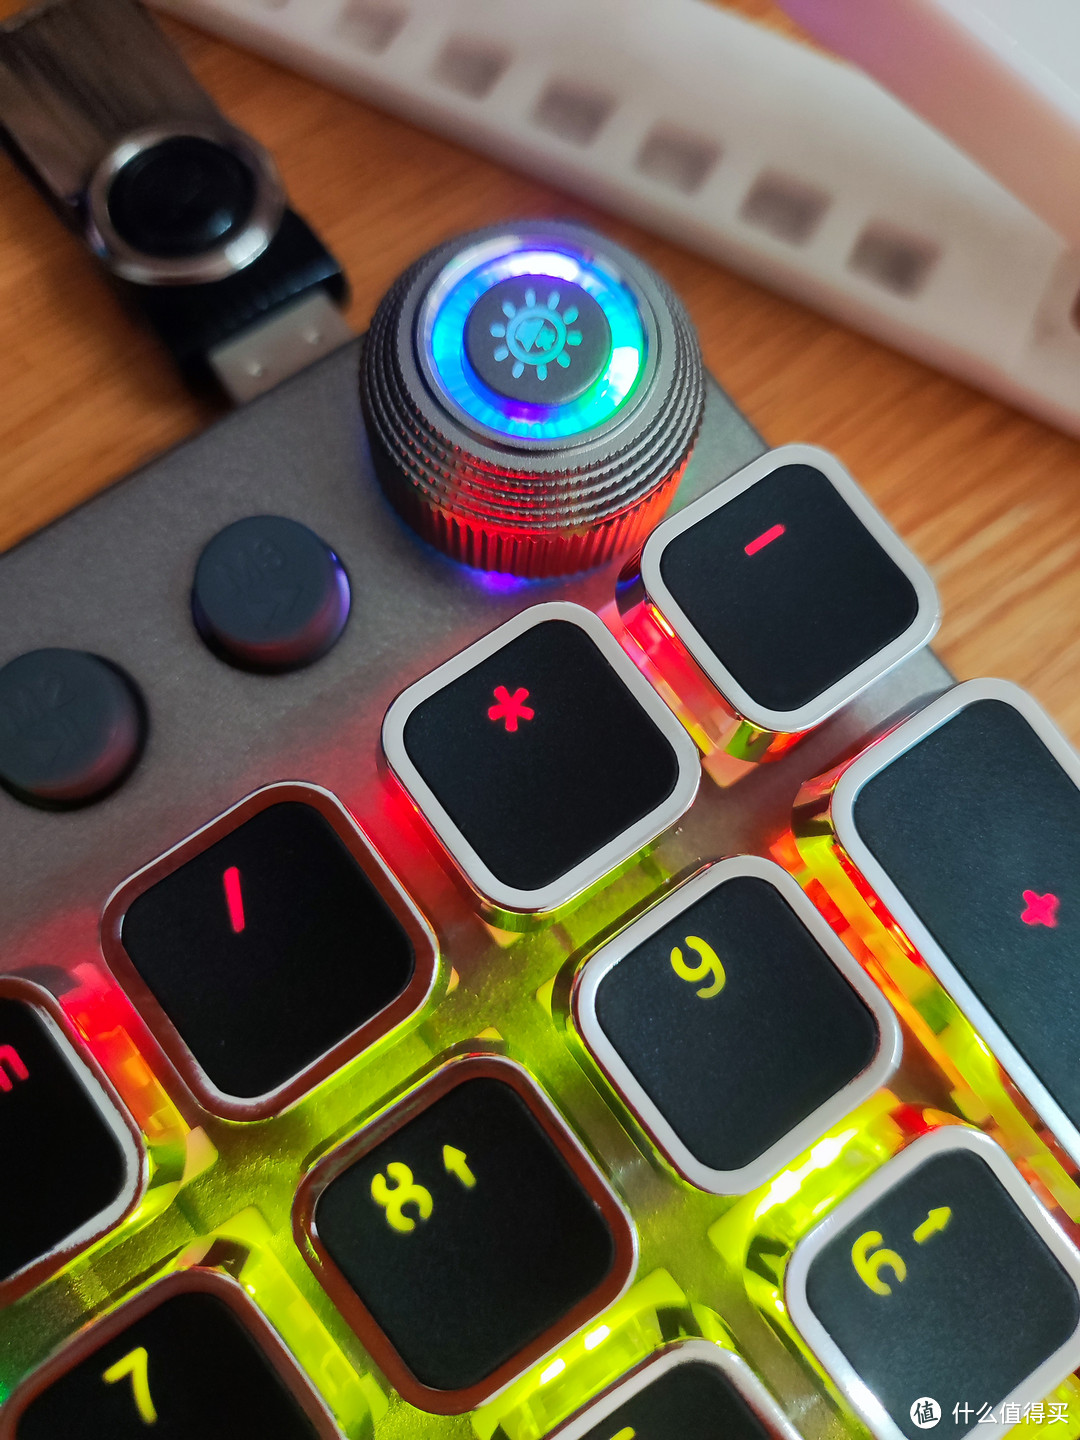 狼蛛T500机械键盘鼠标套装，灯光十分炫酷，手感很不错